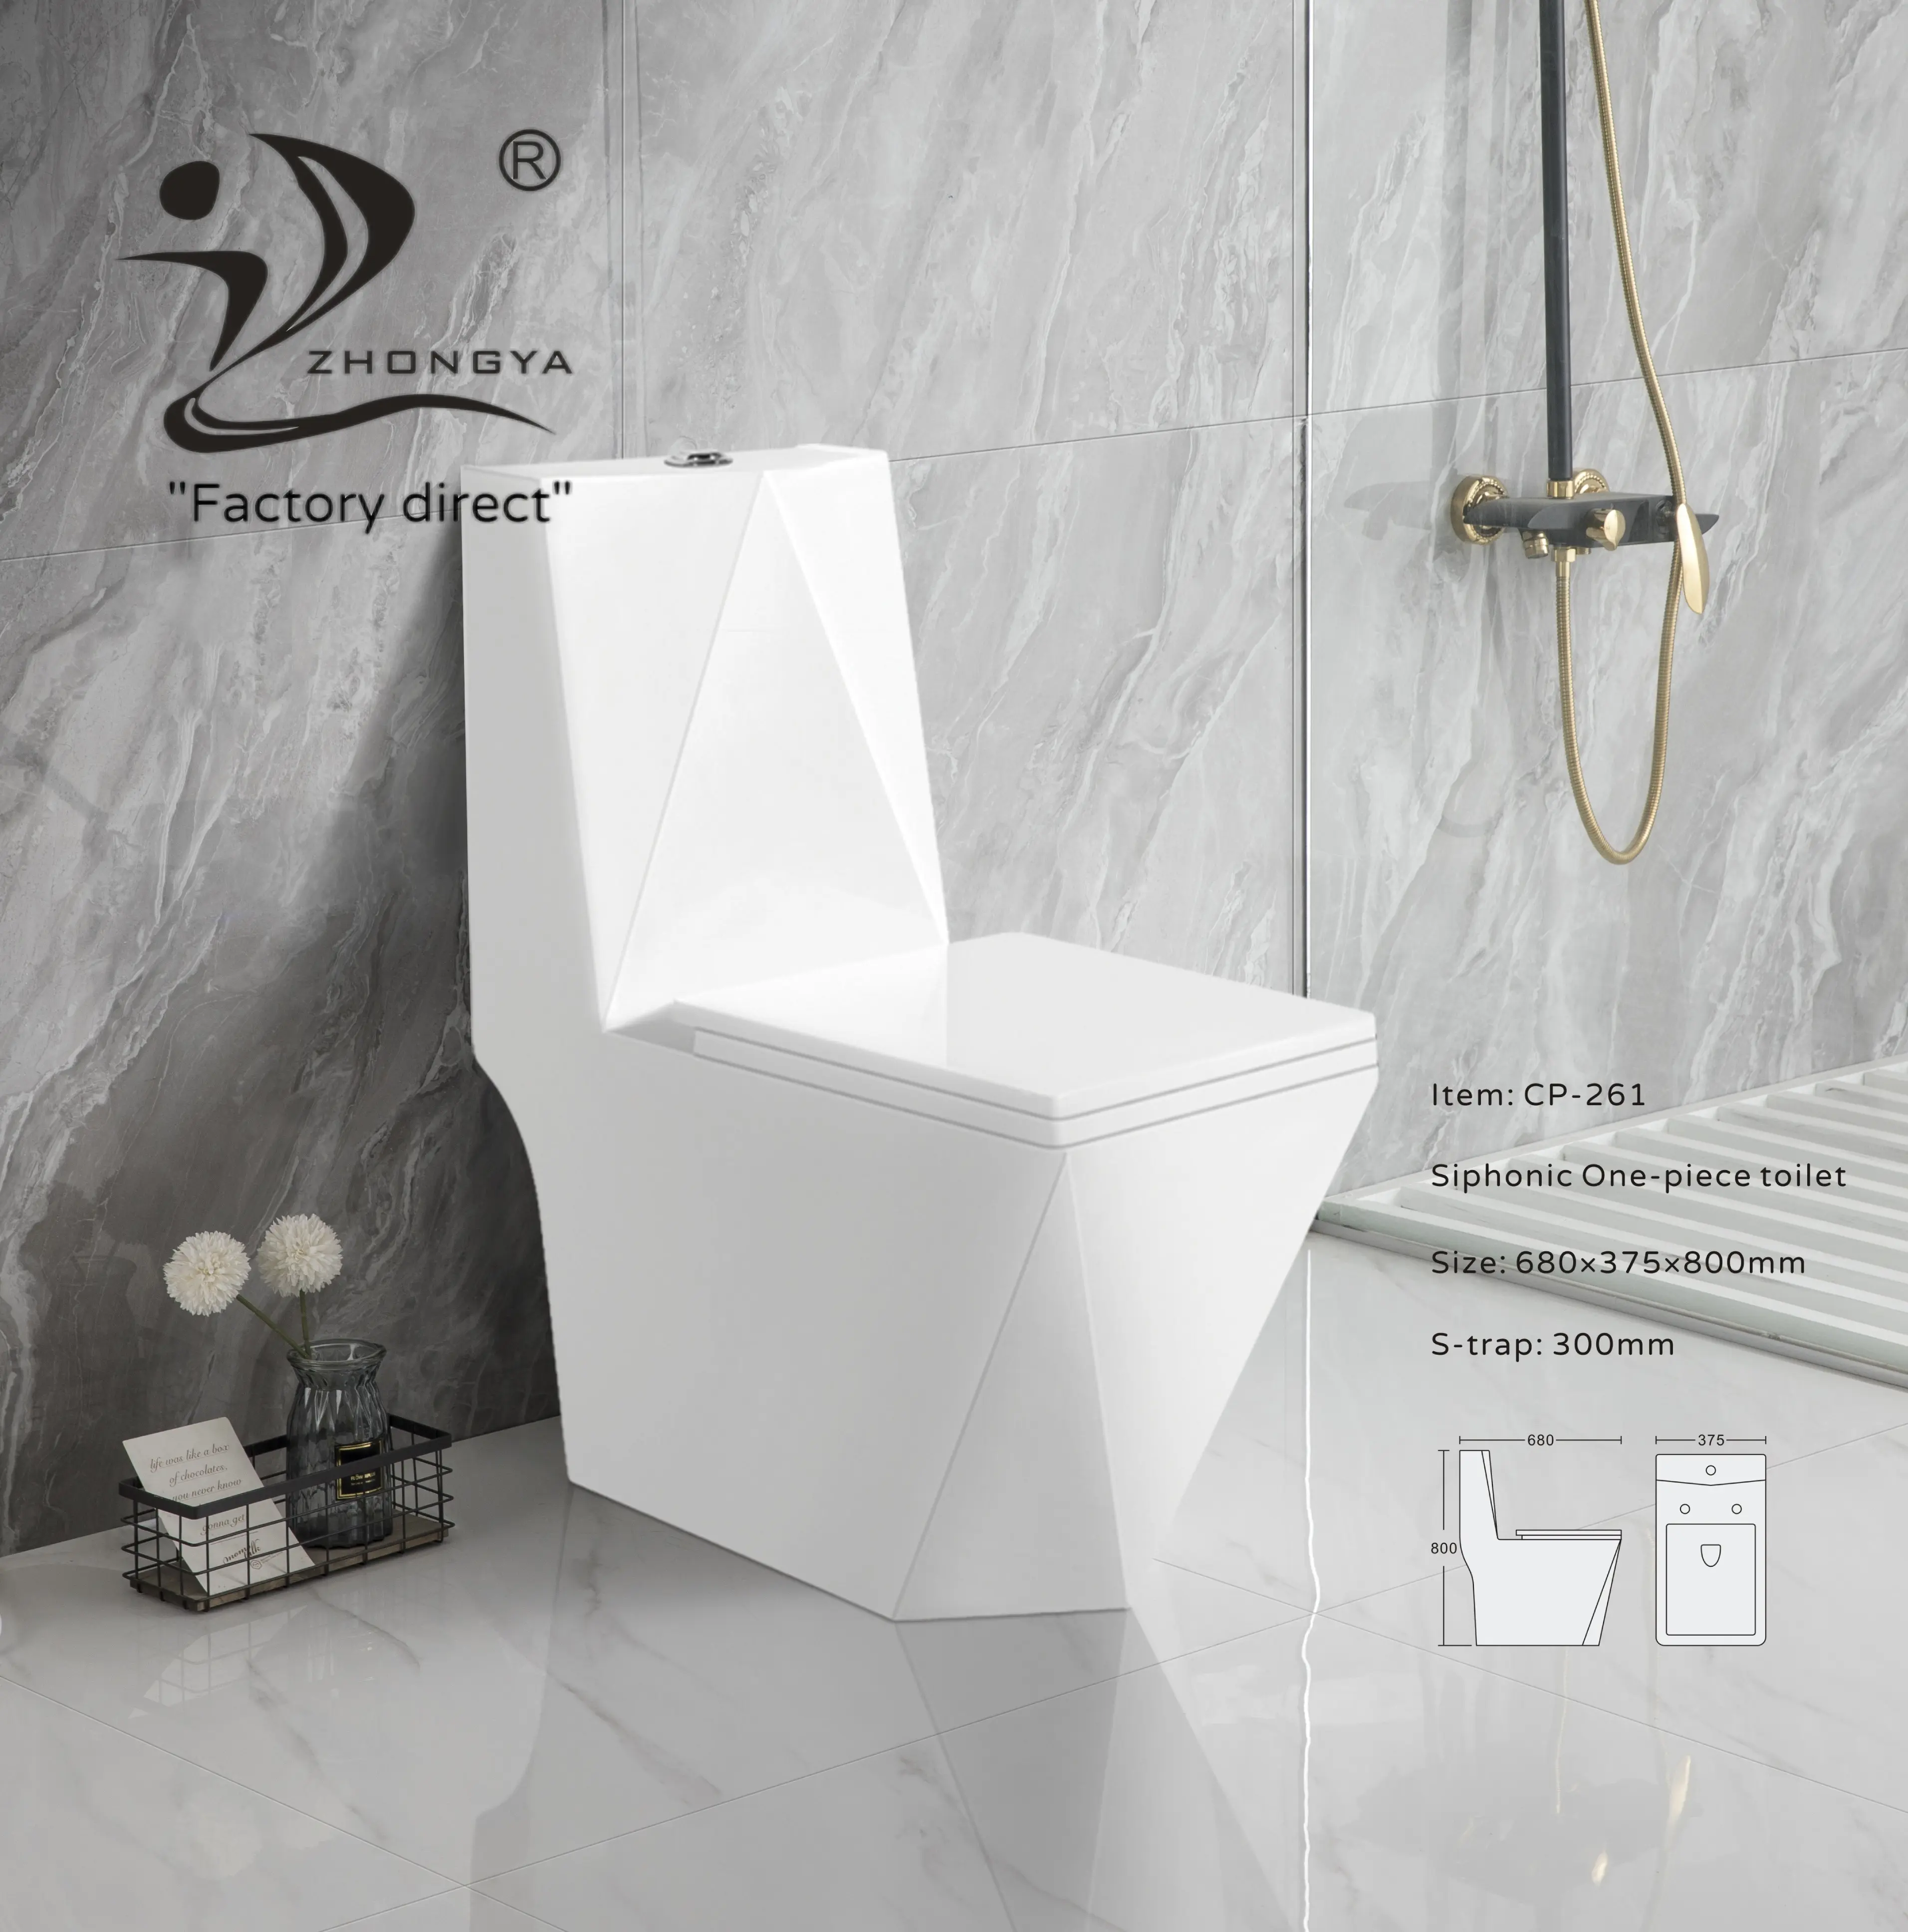 ZHONGYA Oem fabricante baño sanitario sifónico WC forma de diamante inodoro de cerámica barato blanco inodoro de una pieza